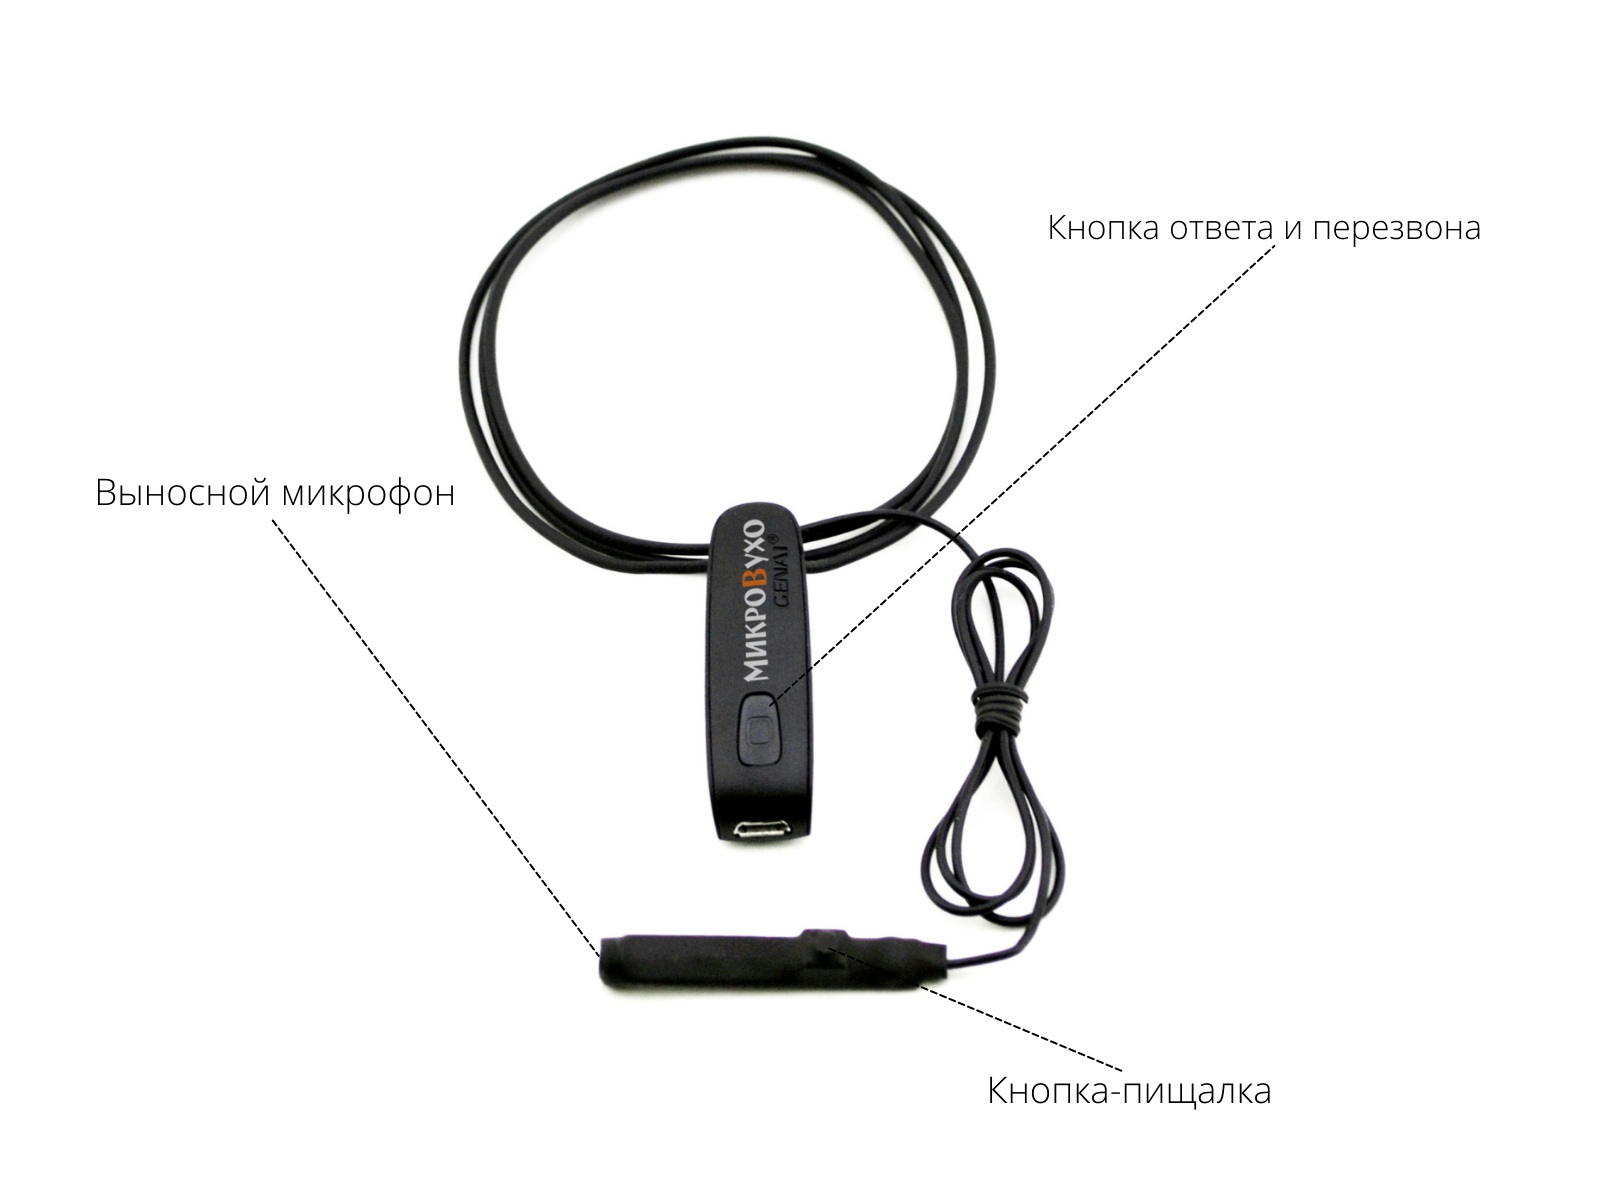 Bluetooth Basic с кнопкой-пищалкой, капсулой Premium и магнитами 2 мм - изображение 5